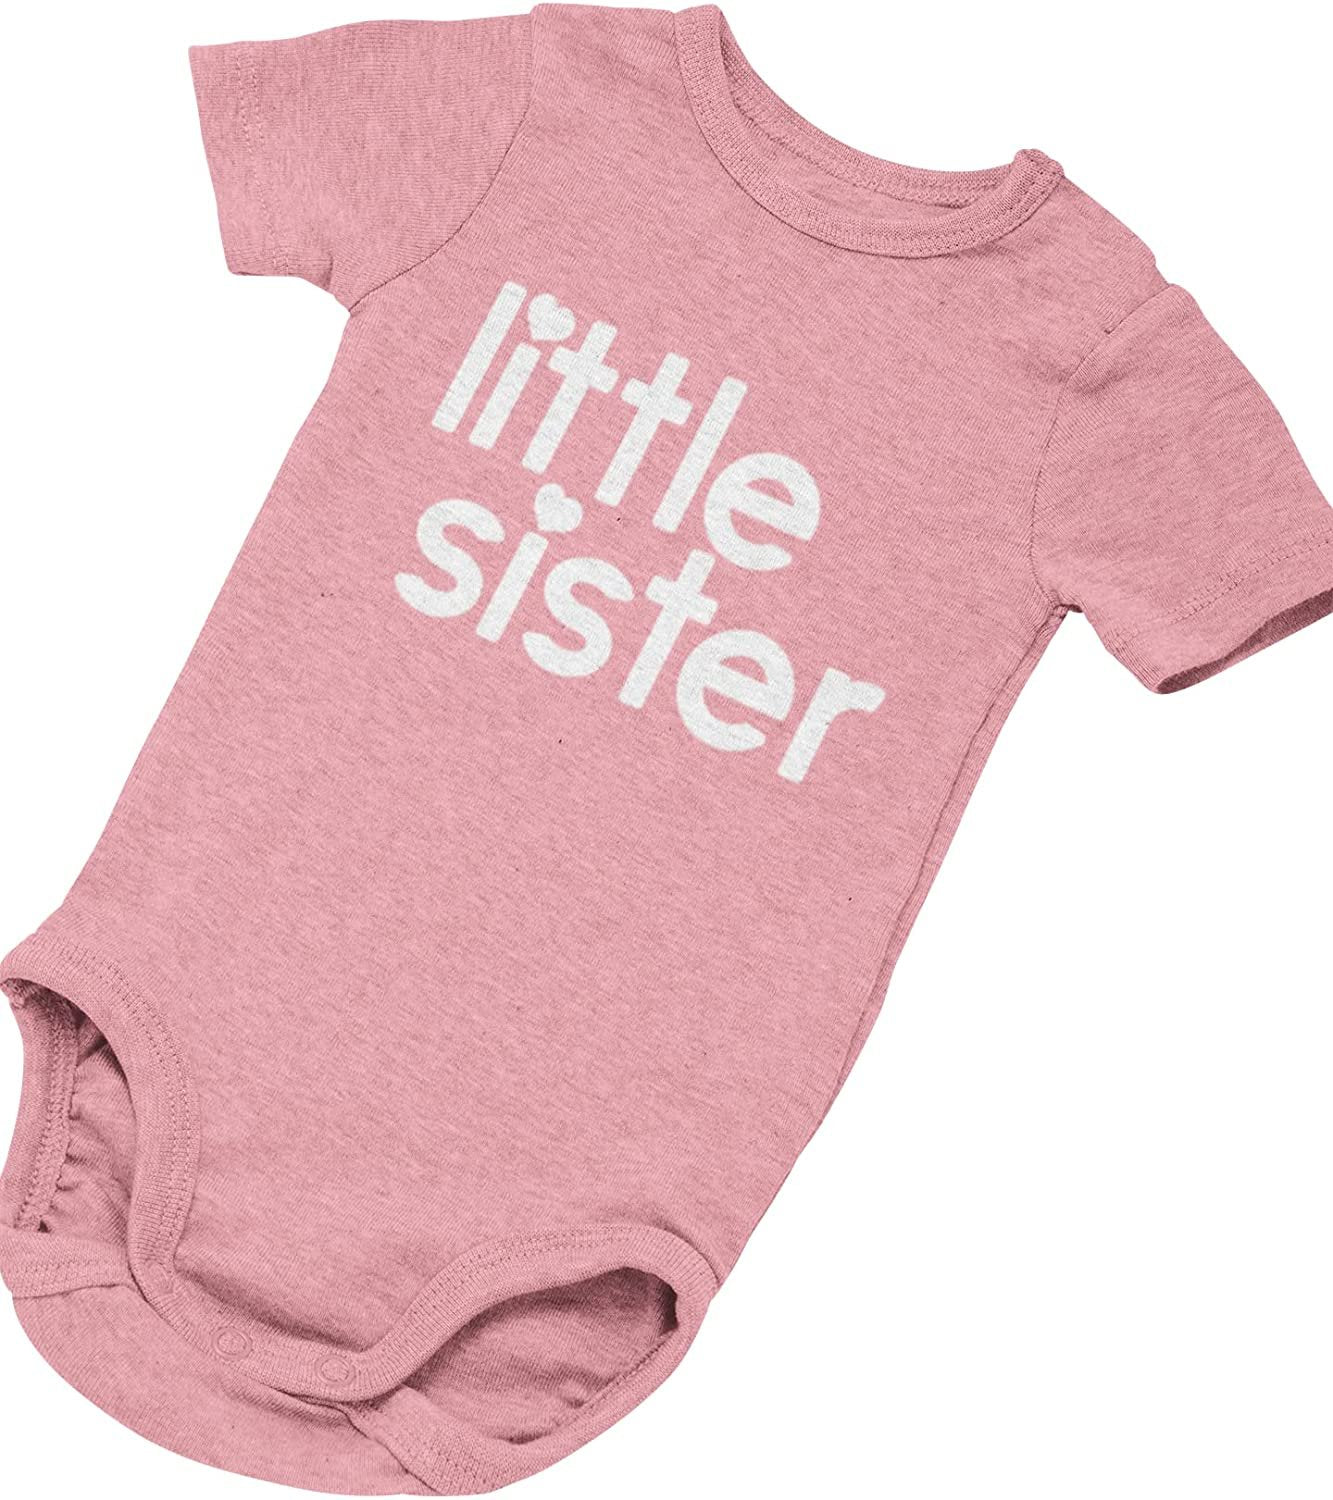 Annonce de nouveau-né Little Sister Baby Gift Body (Rose)